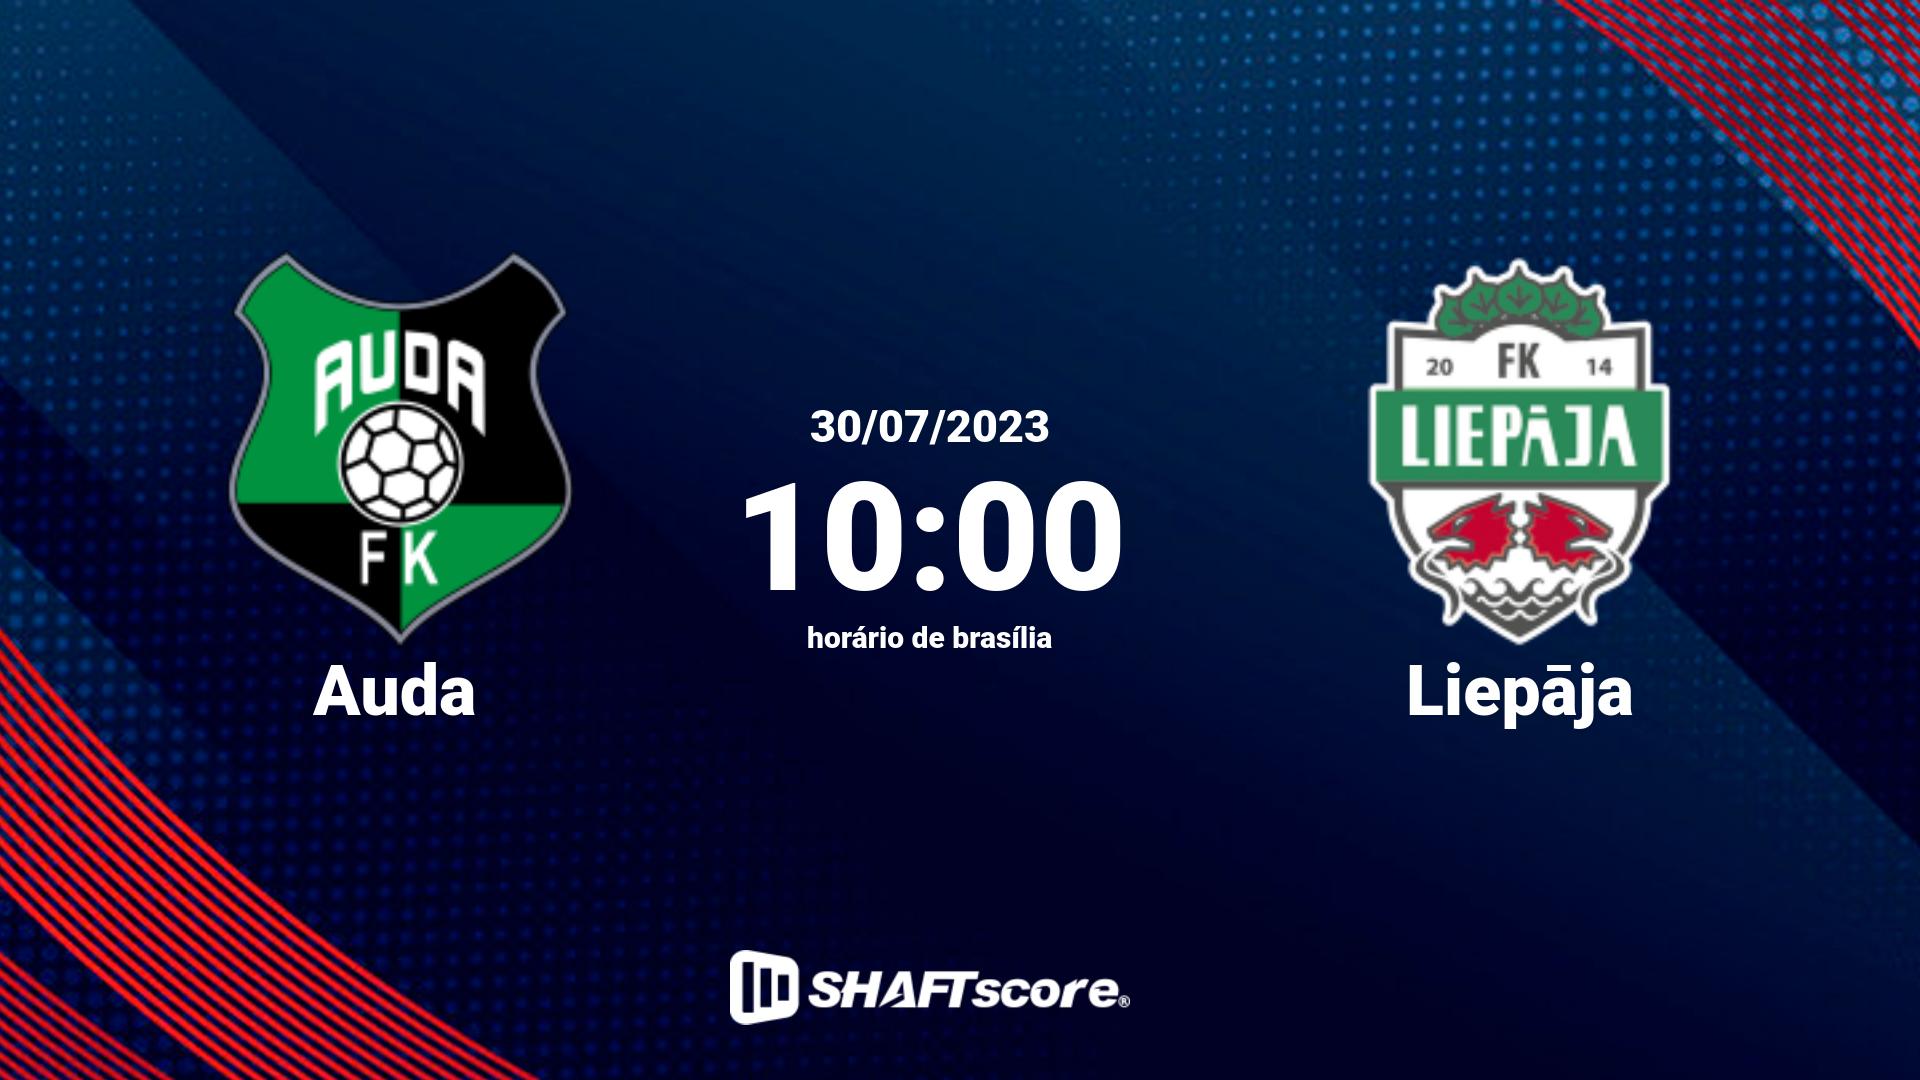 Estatísticas do jogo Auda vs Liepāja 30.07 10:00